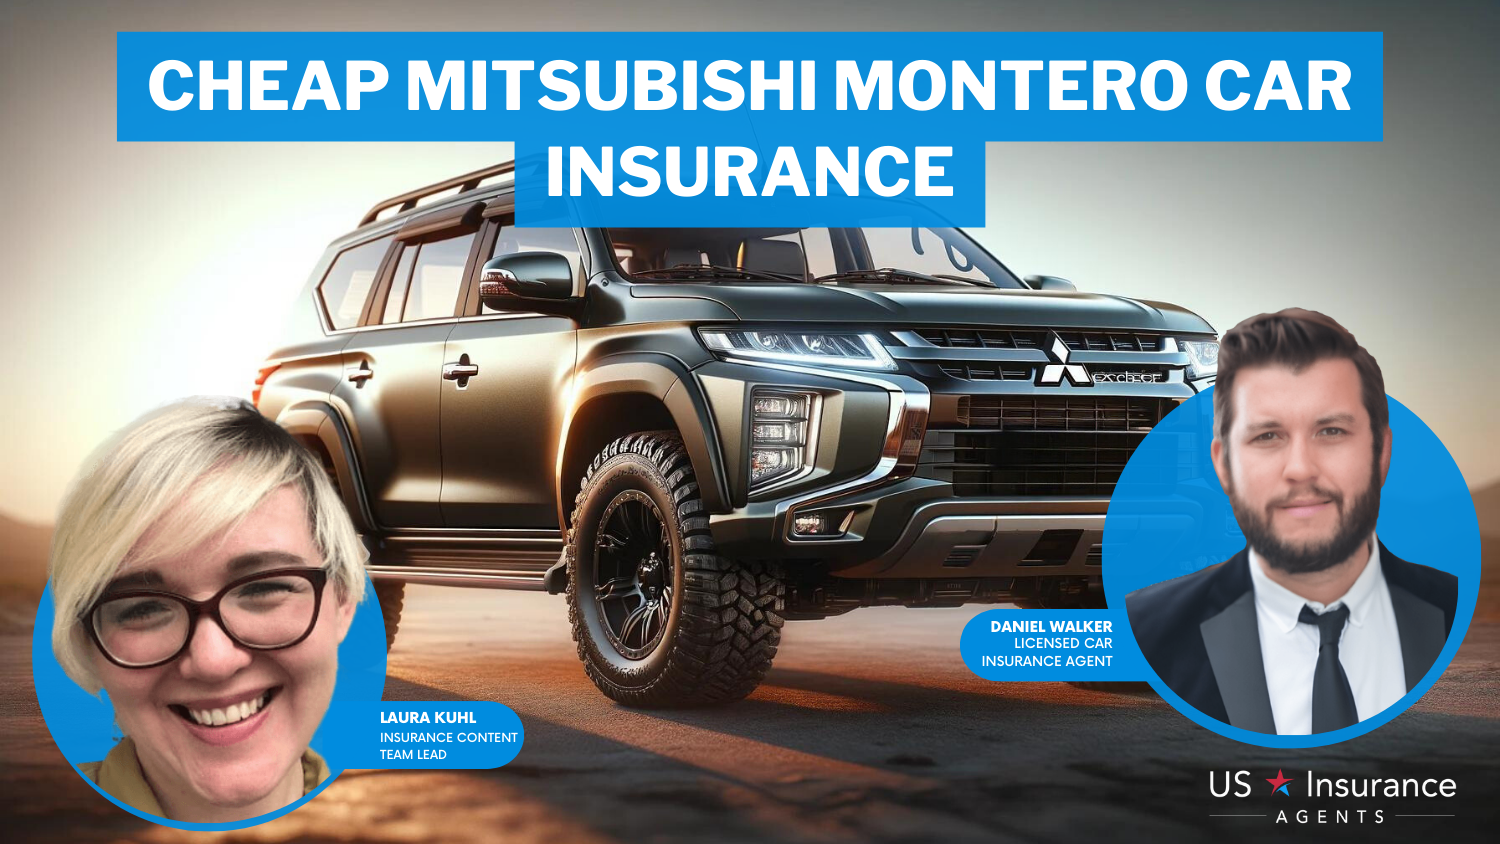 State Farm, American Family, and Progressive: Cheap Mitsubishi Montero car insurance